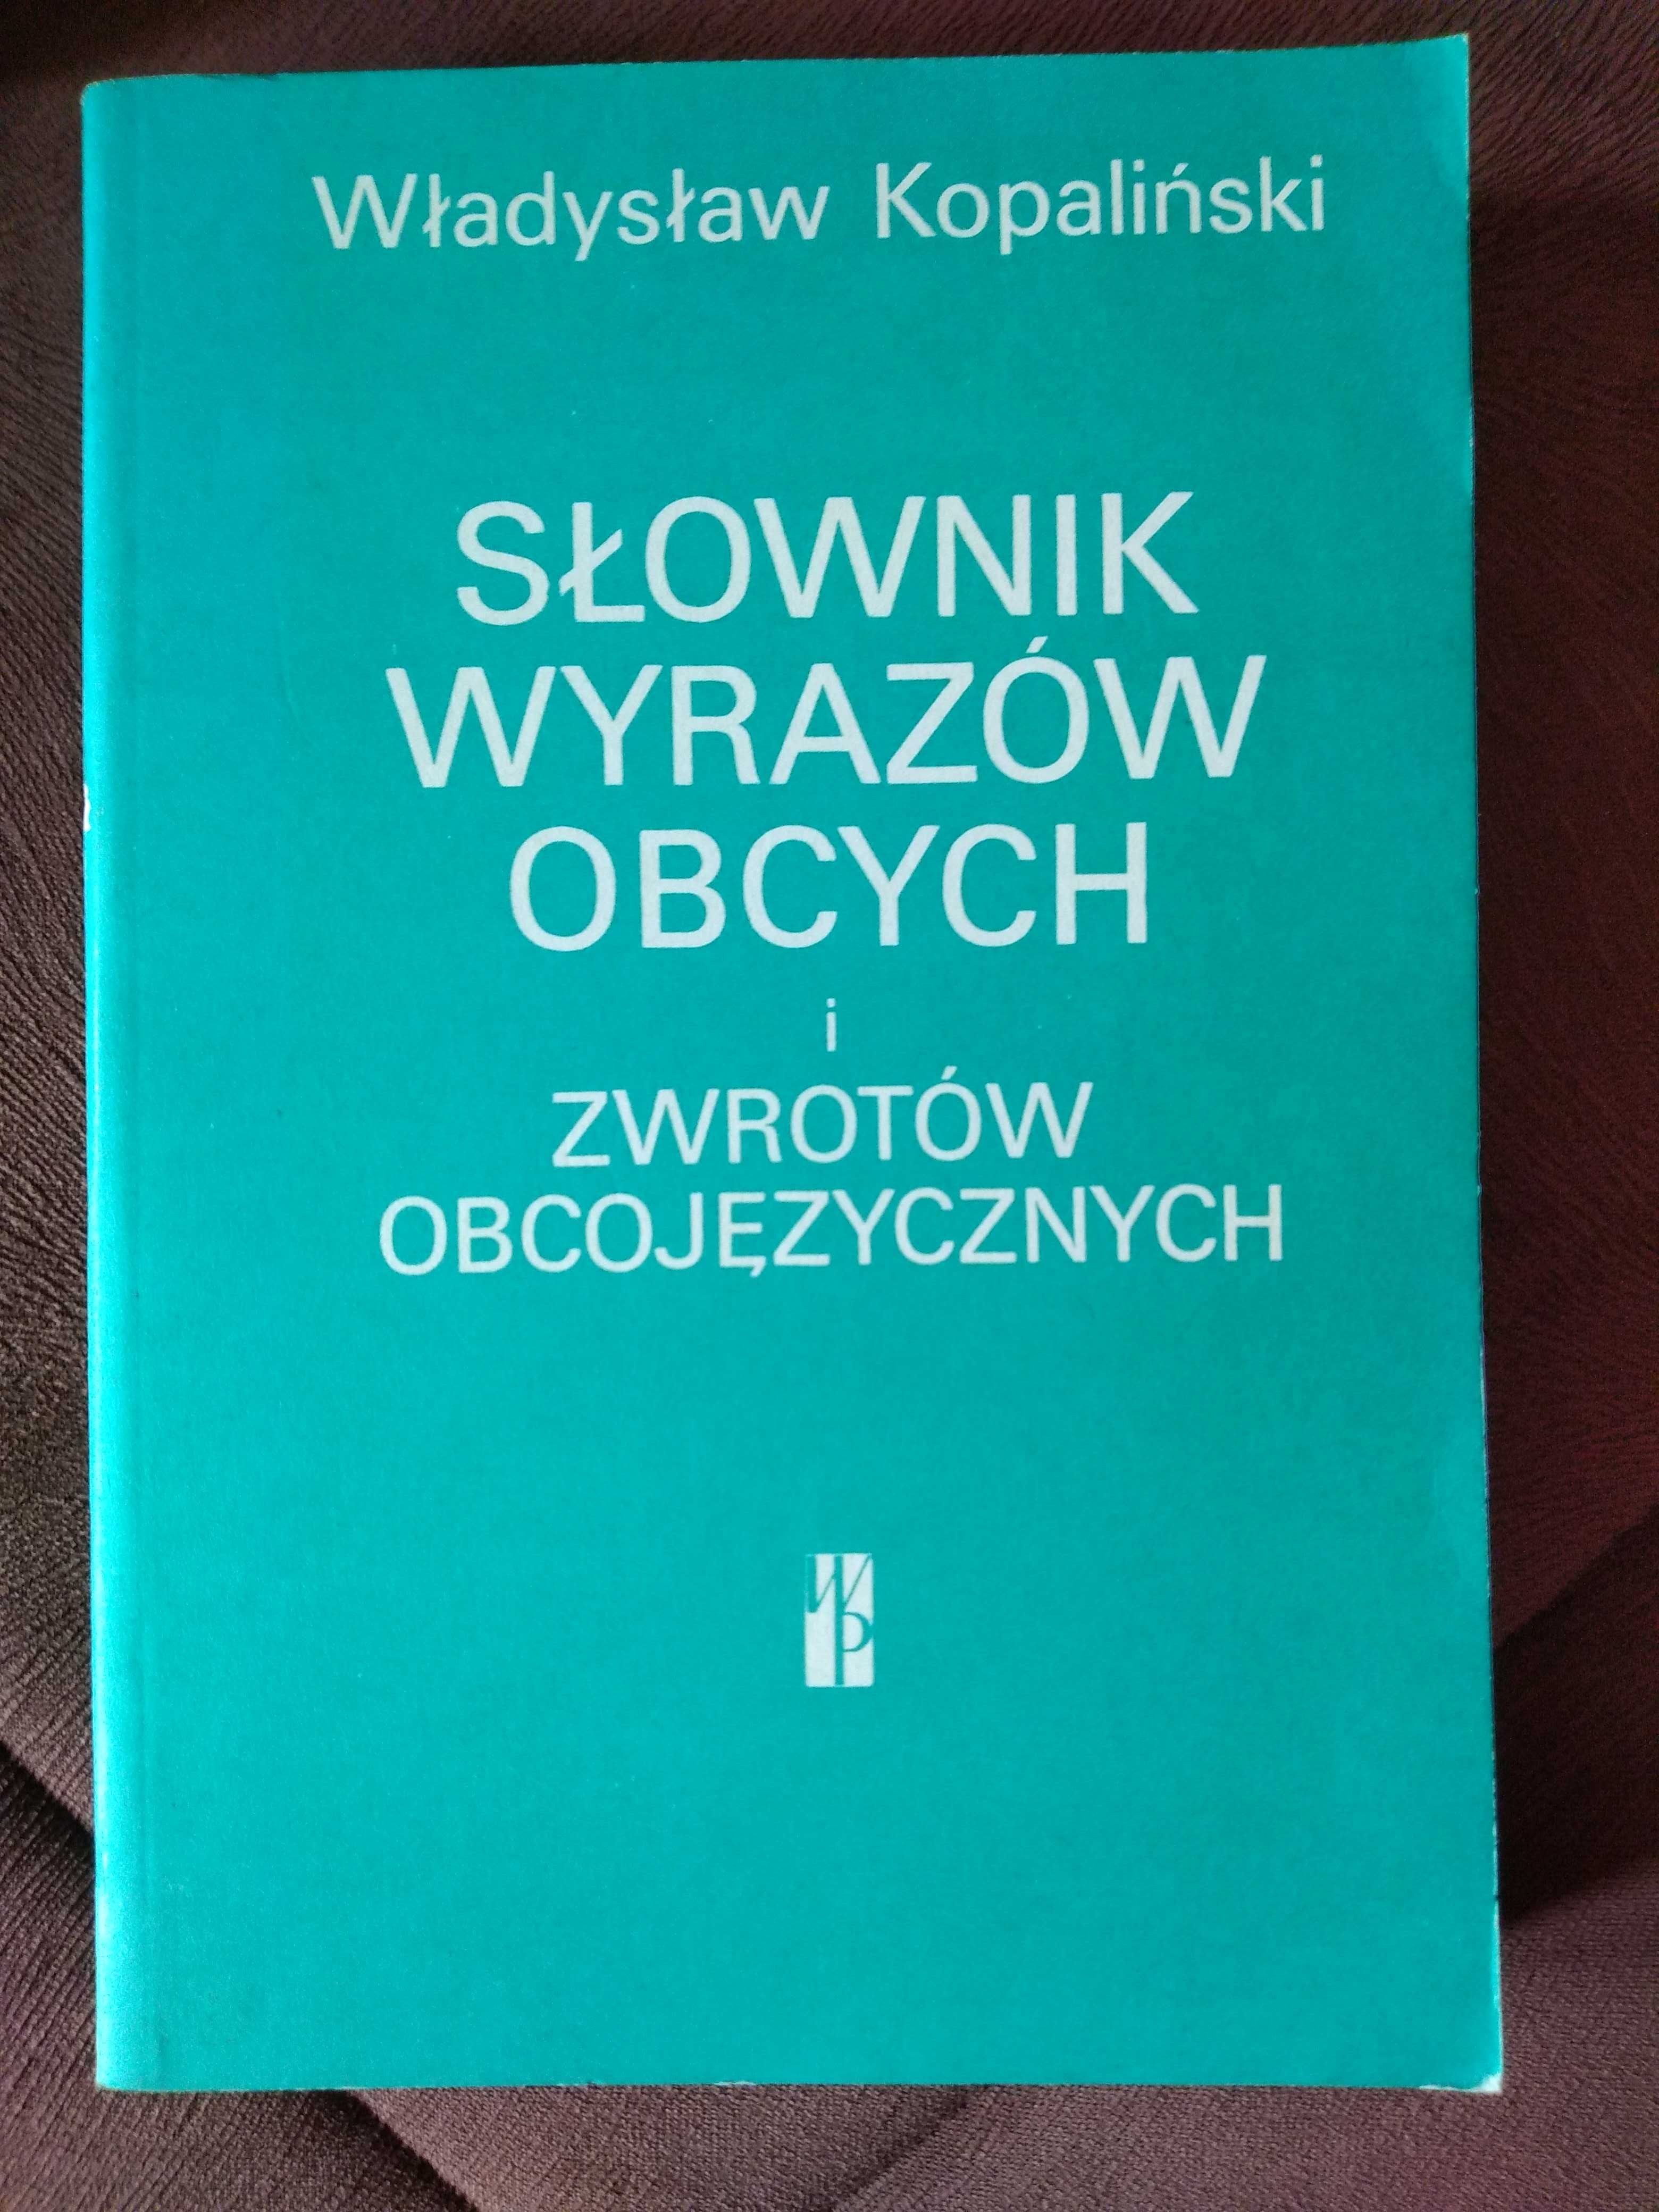 Słownik wyrazów obcych i zwrotów obcojęzycznych / Władysław Kopaliński